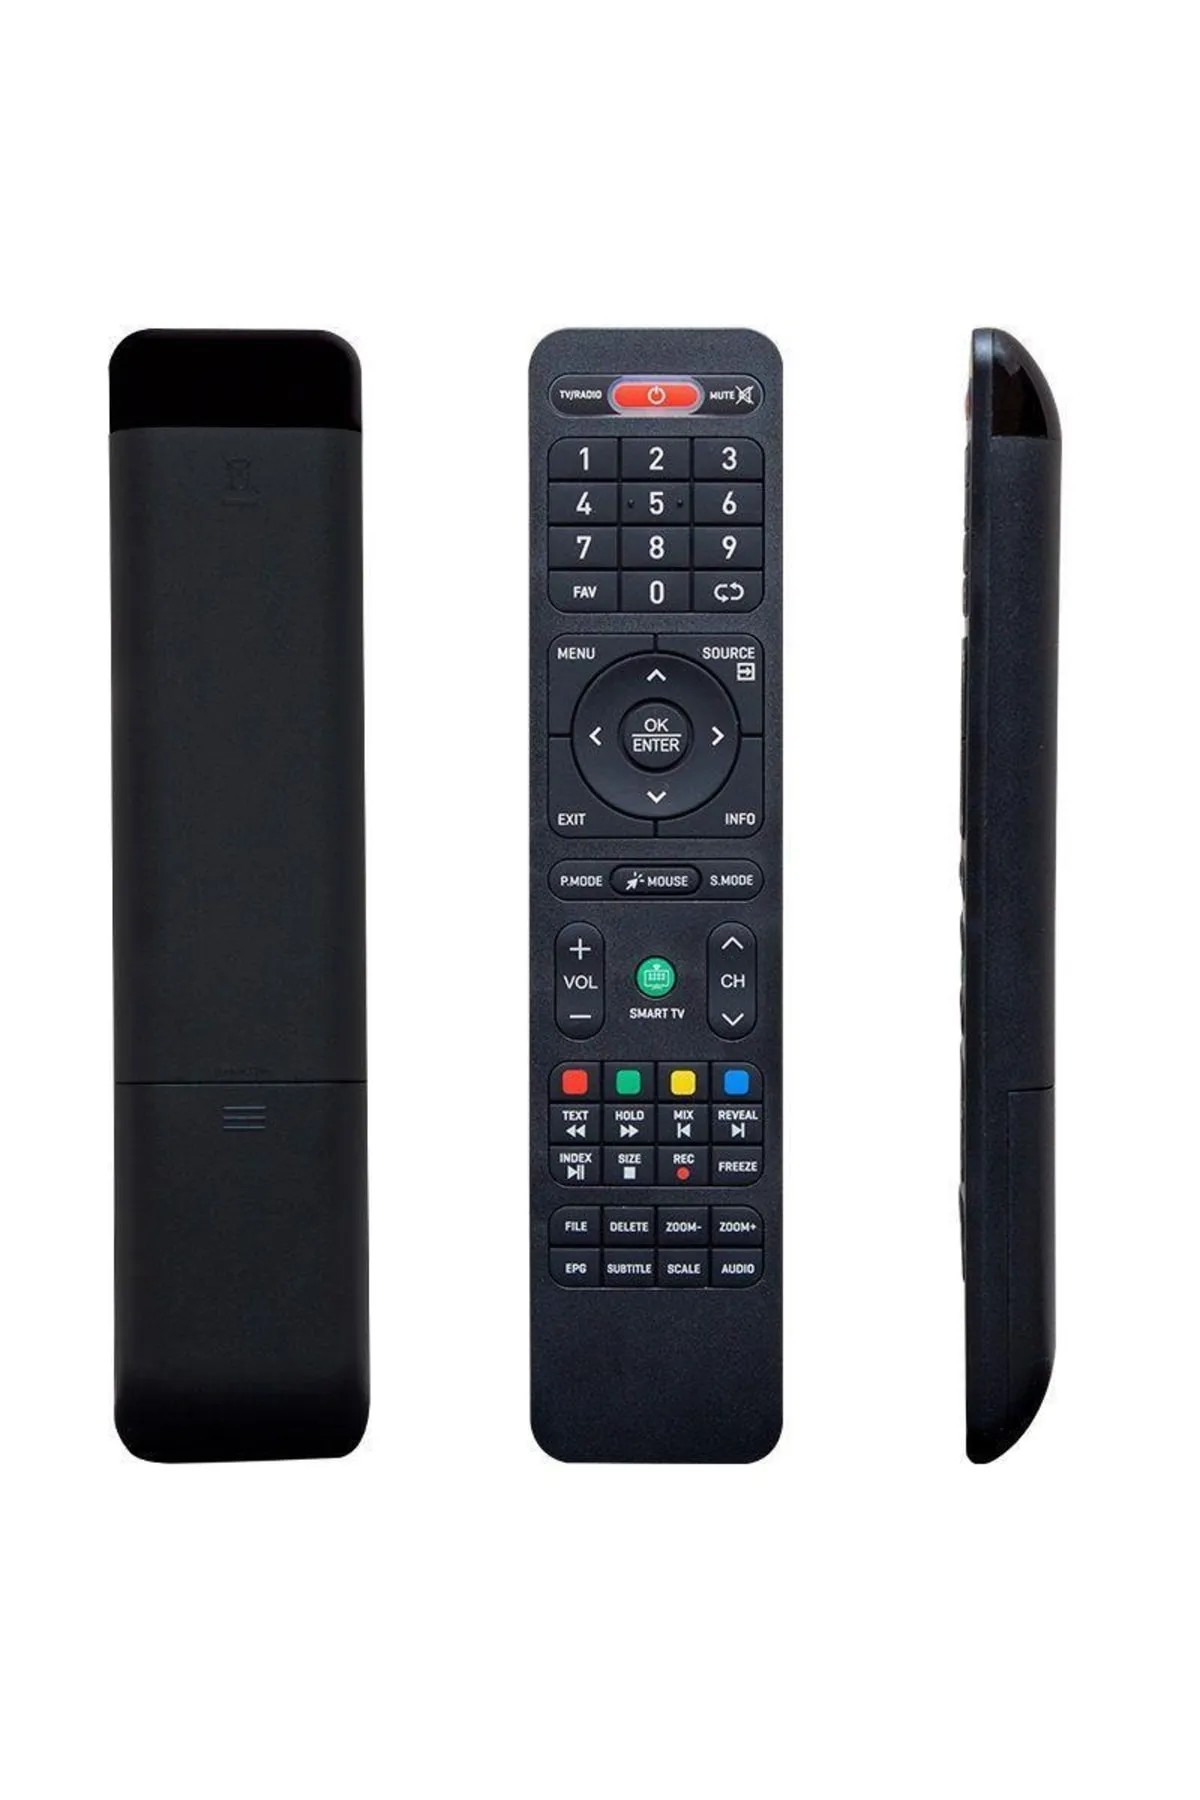 Onvo Ov58350 Android Smart Led Tv Kumanda 2200-B-OV58350